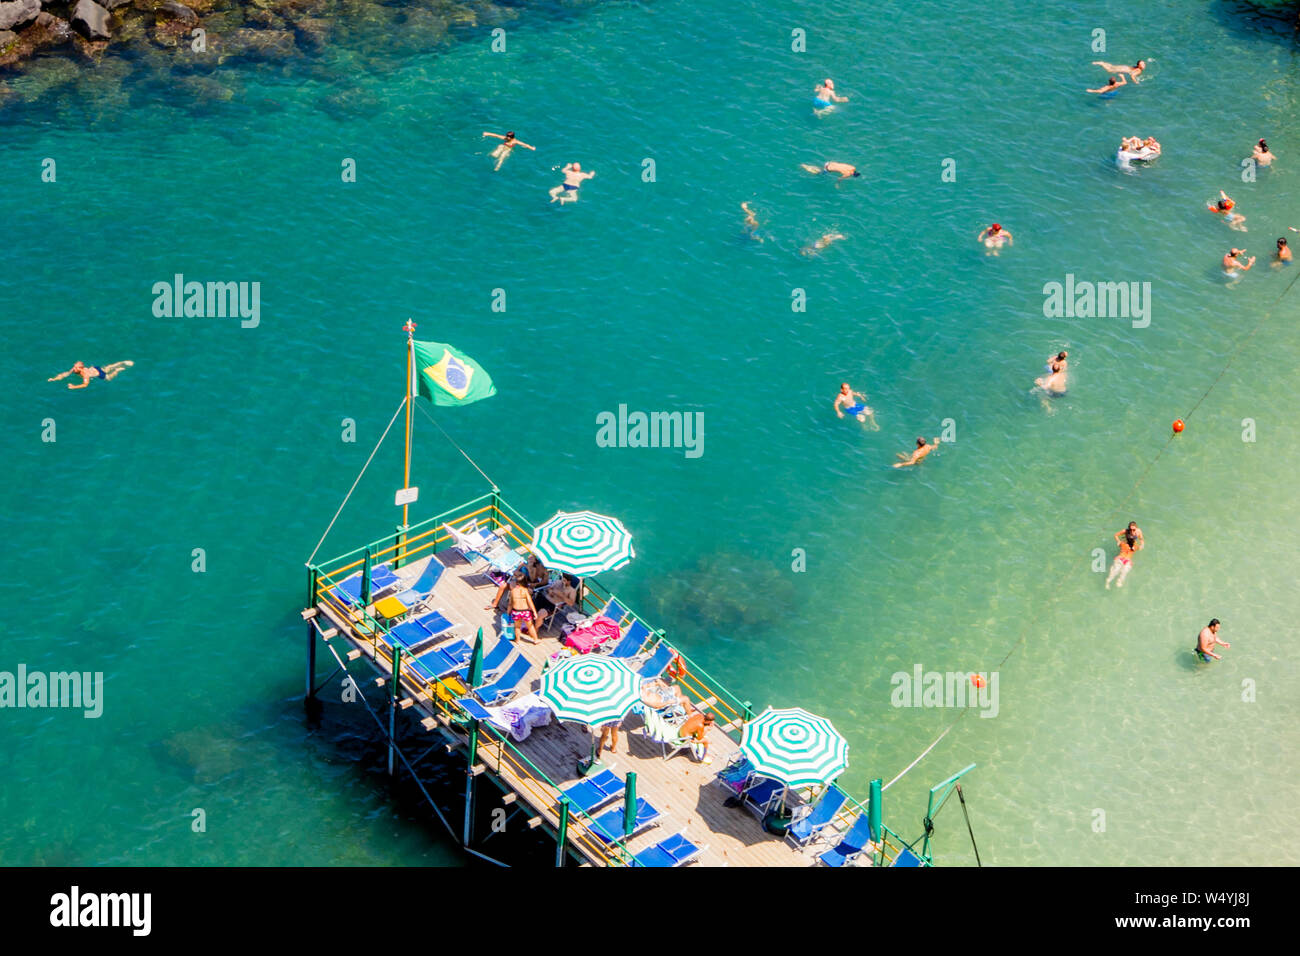 Sorrento, Italien - 14 Juli 2012: Menschen am Strand in Sorrent an einem heißen Sommertag mit Ruhe und erfrischende, blaue und grüne Wasser Stockfoto